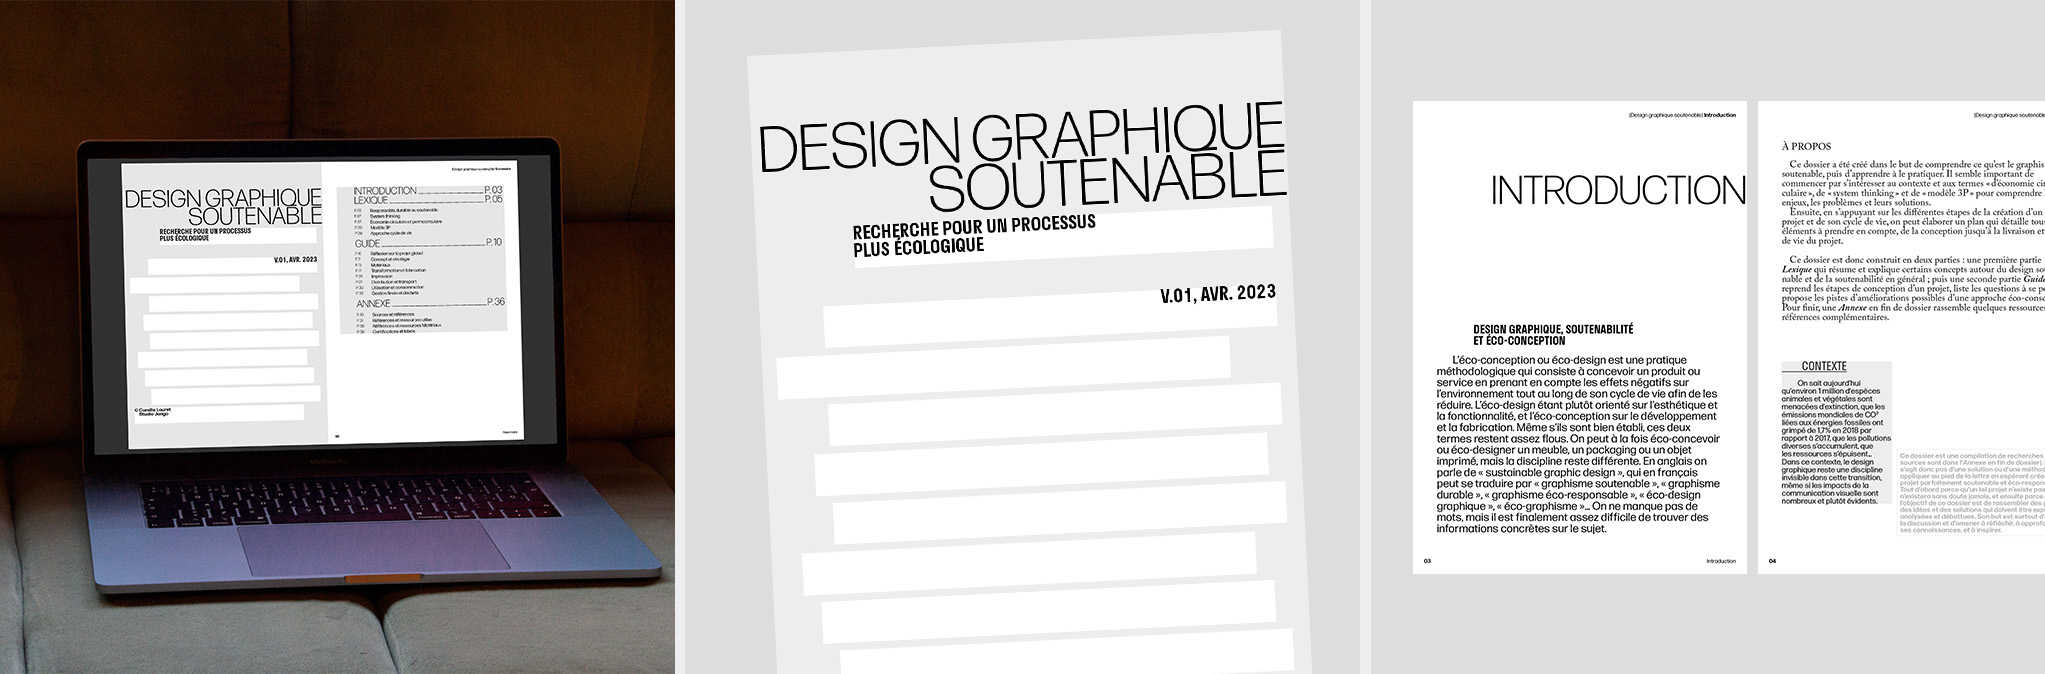 Dossier Design graphique soutenable